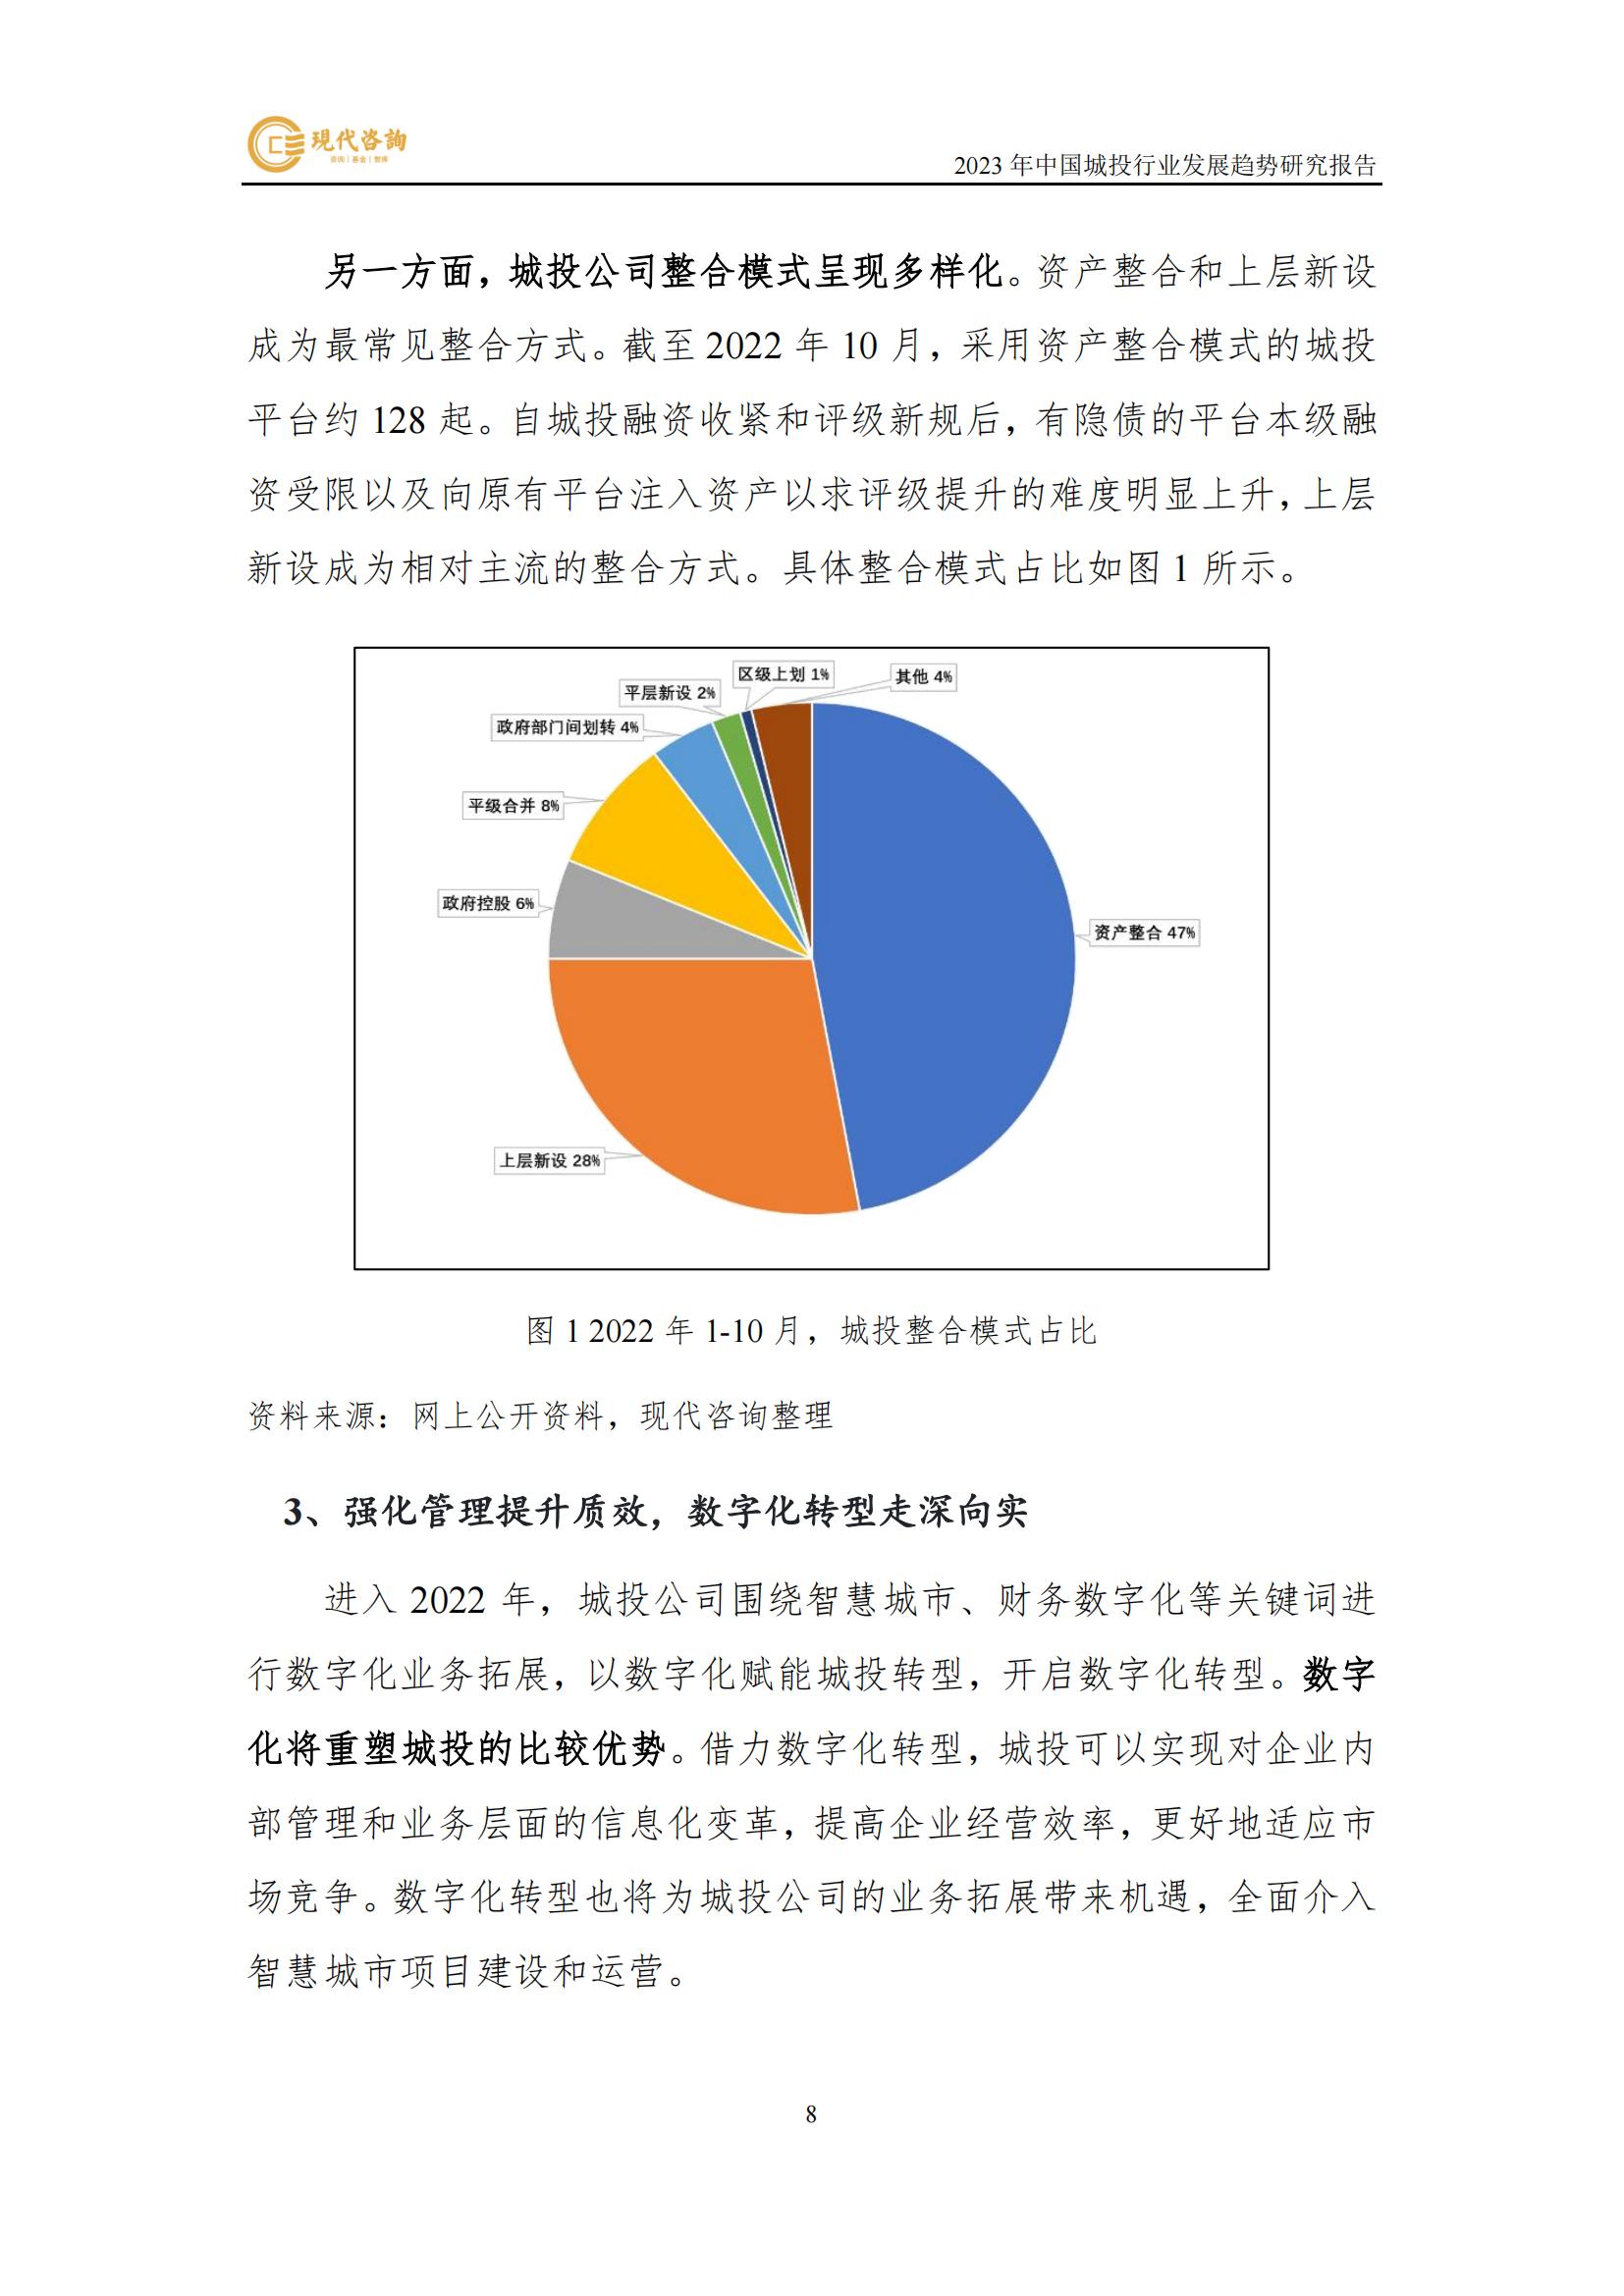 中國城投行業發展趨勢研究報告（2023）(2)_14.jpg